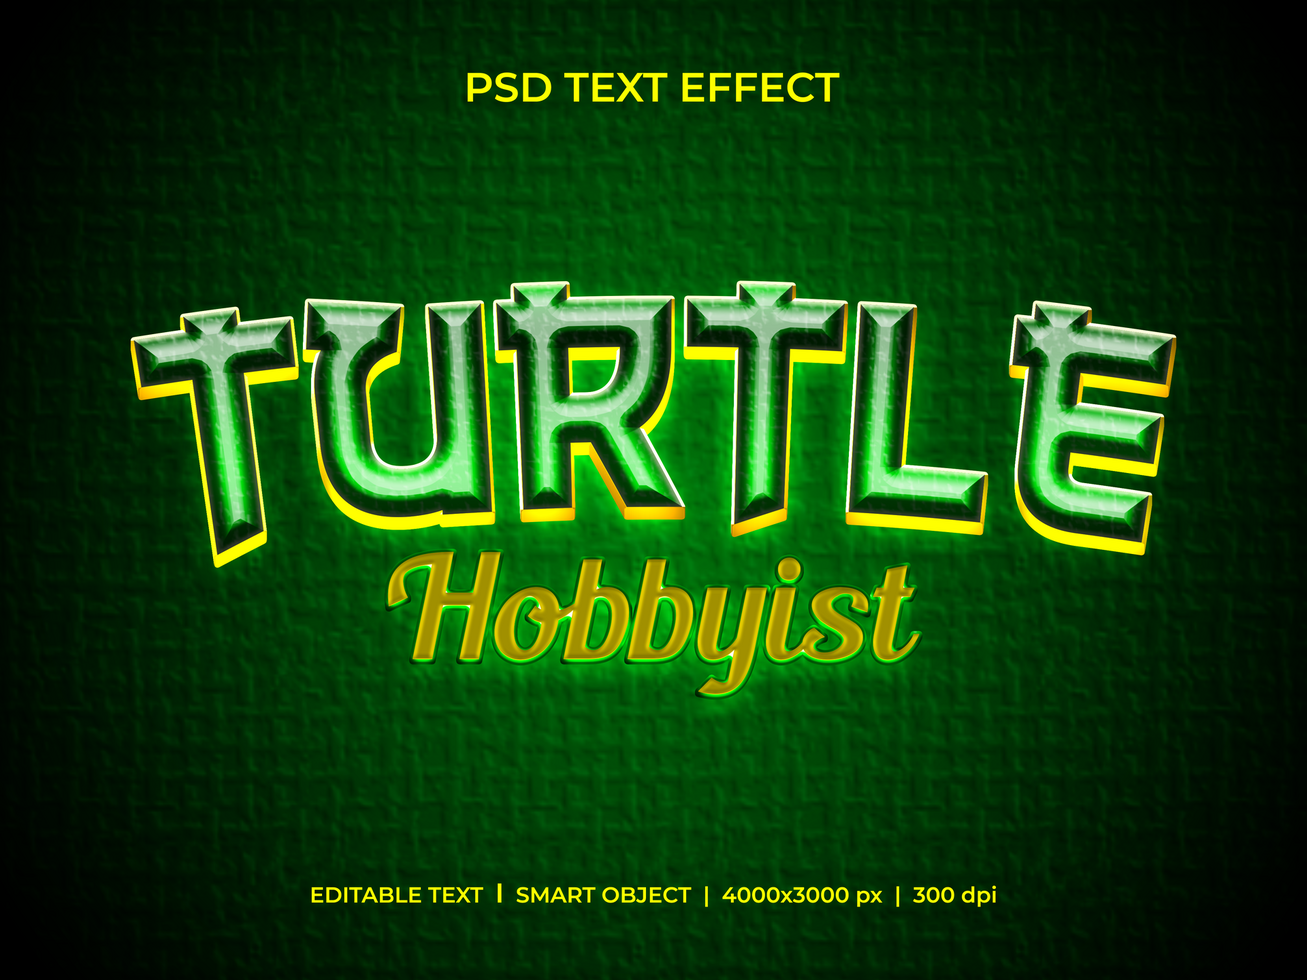 schildpad hobbyist tekst effect psd